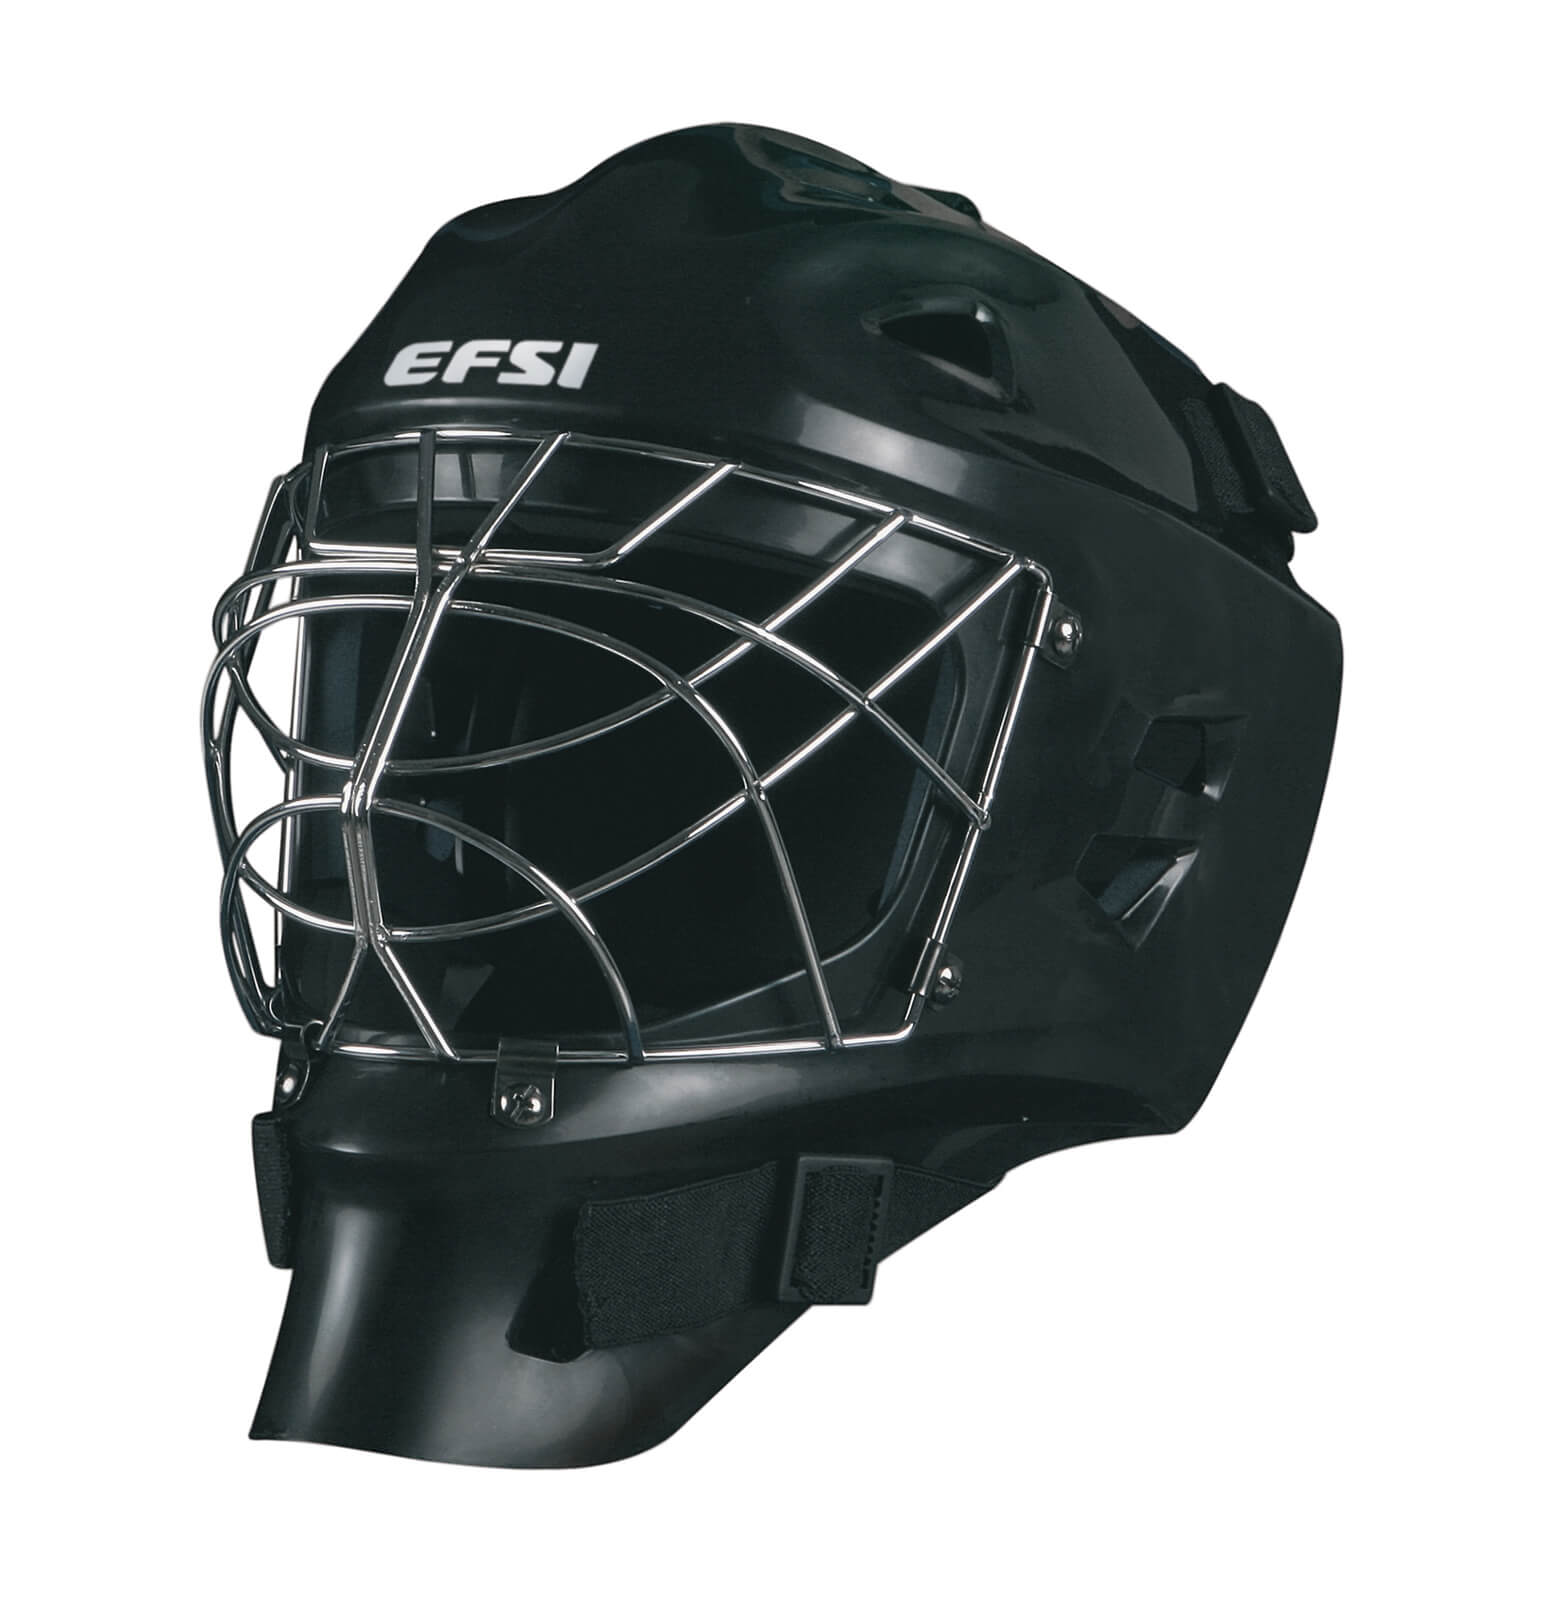 Хоккейный шлем вратаря EFSI TOPGEAR 330